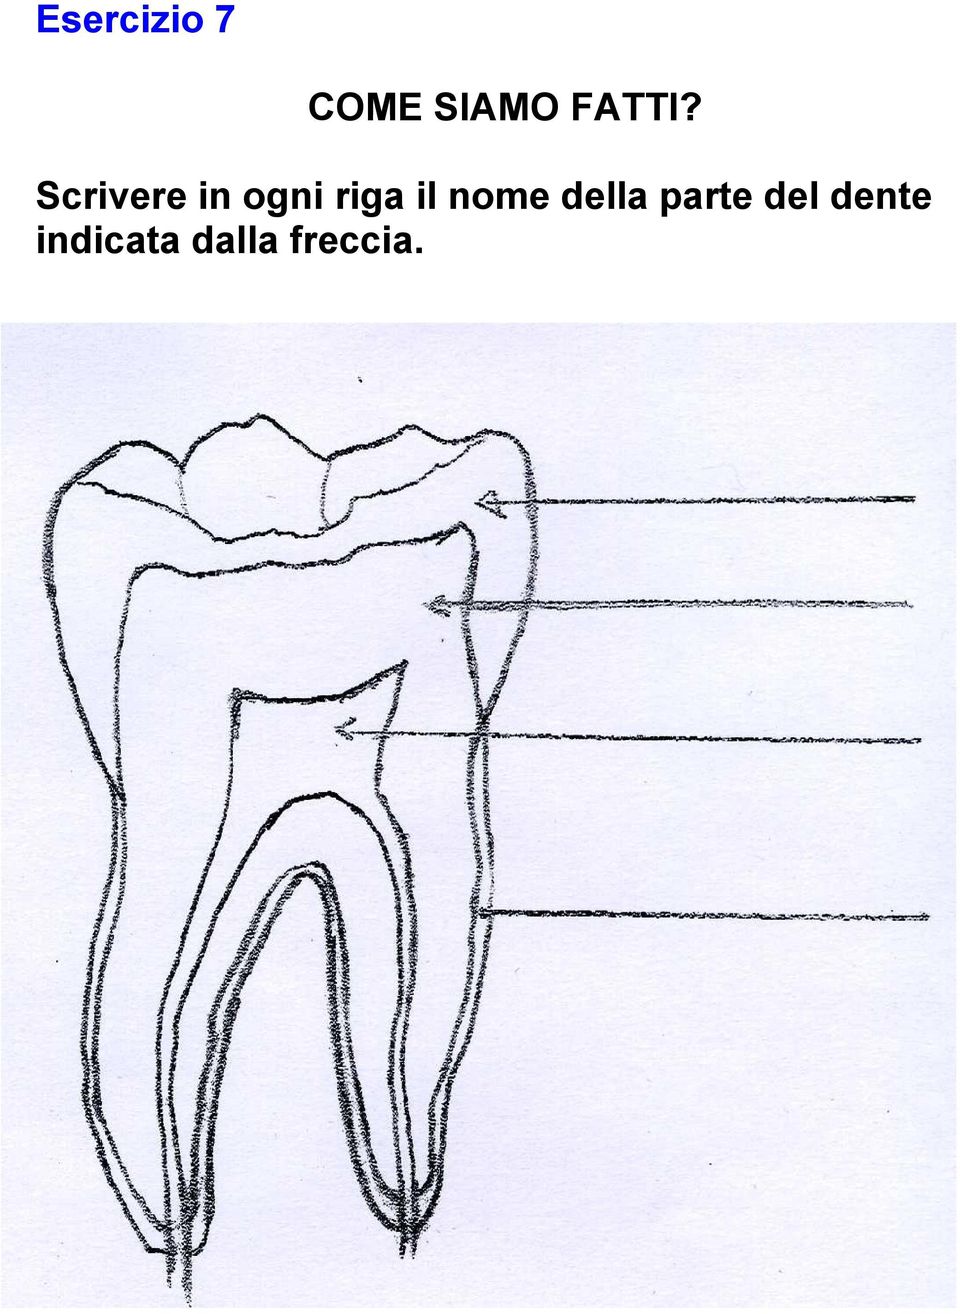 della parte del dente indicata